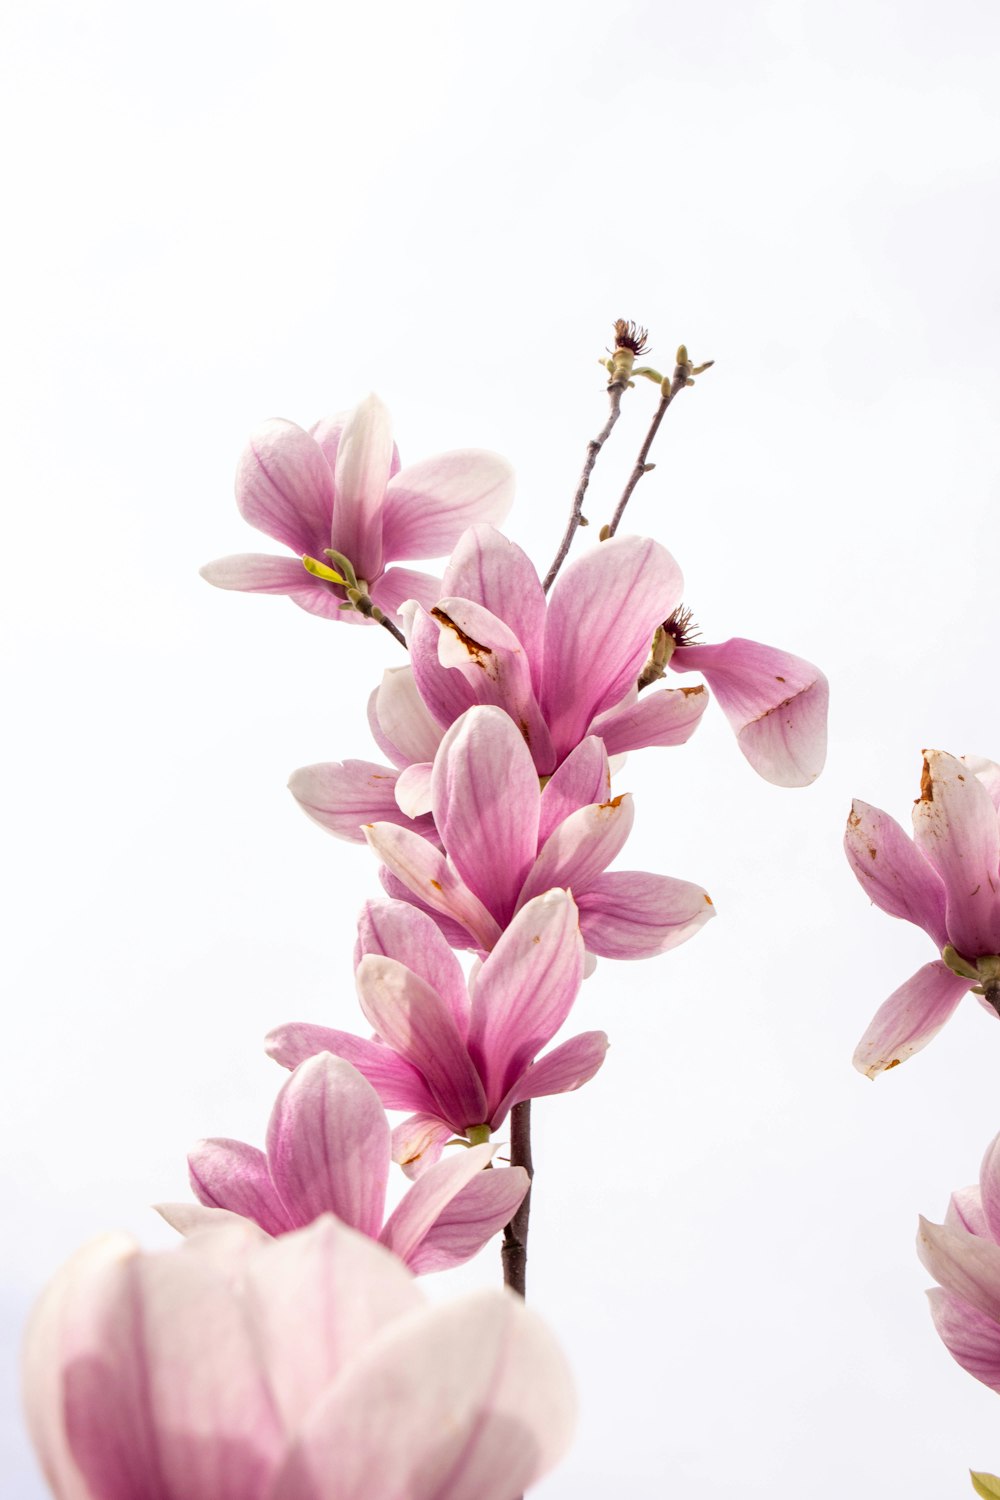 fiori viola e bianchi su sfondo bianco